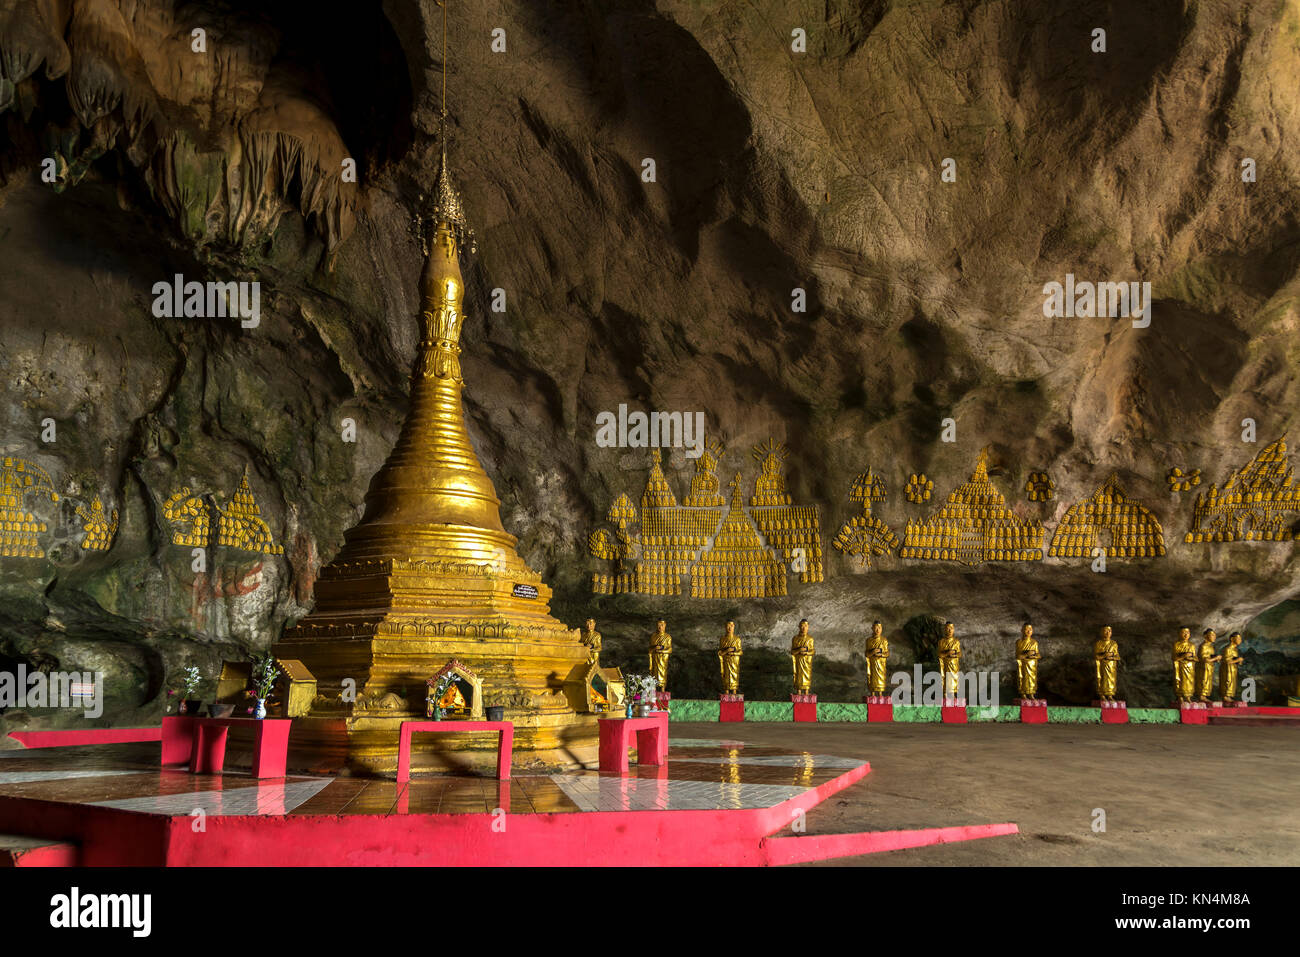 Stupa in grotta di Saddan, di Hpa-an, Myanmar Foto Stock